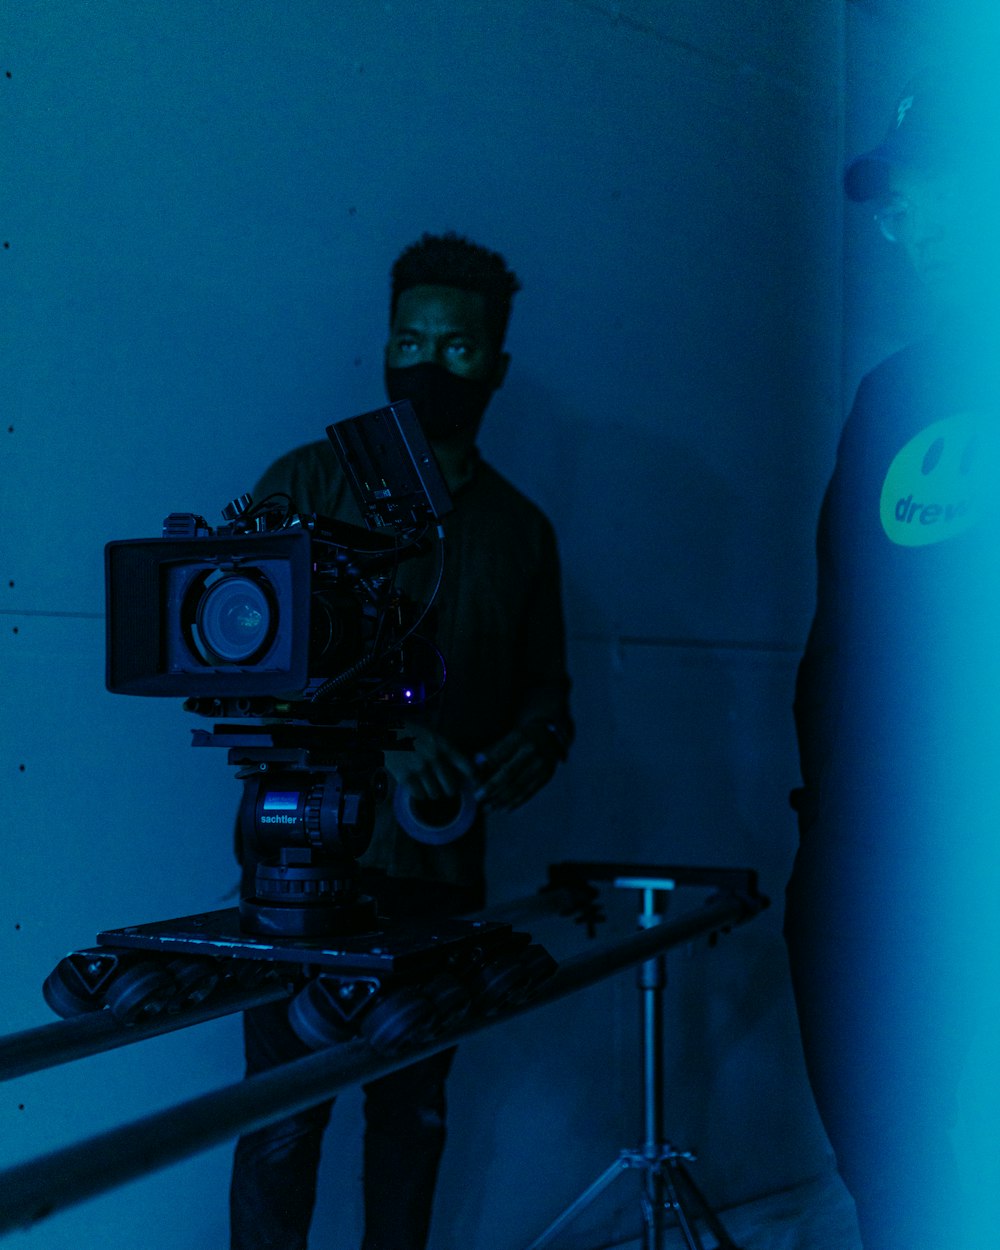 Un homme tenant un appareil photo dans une pièce sombre